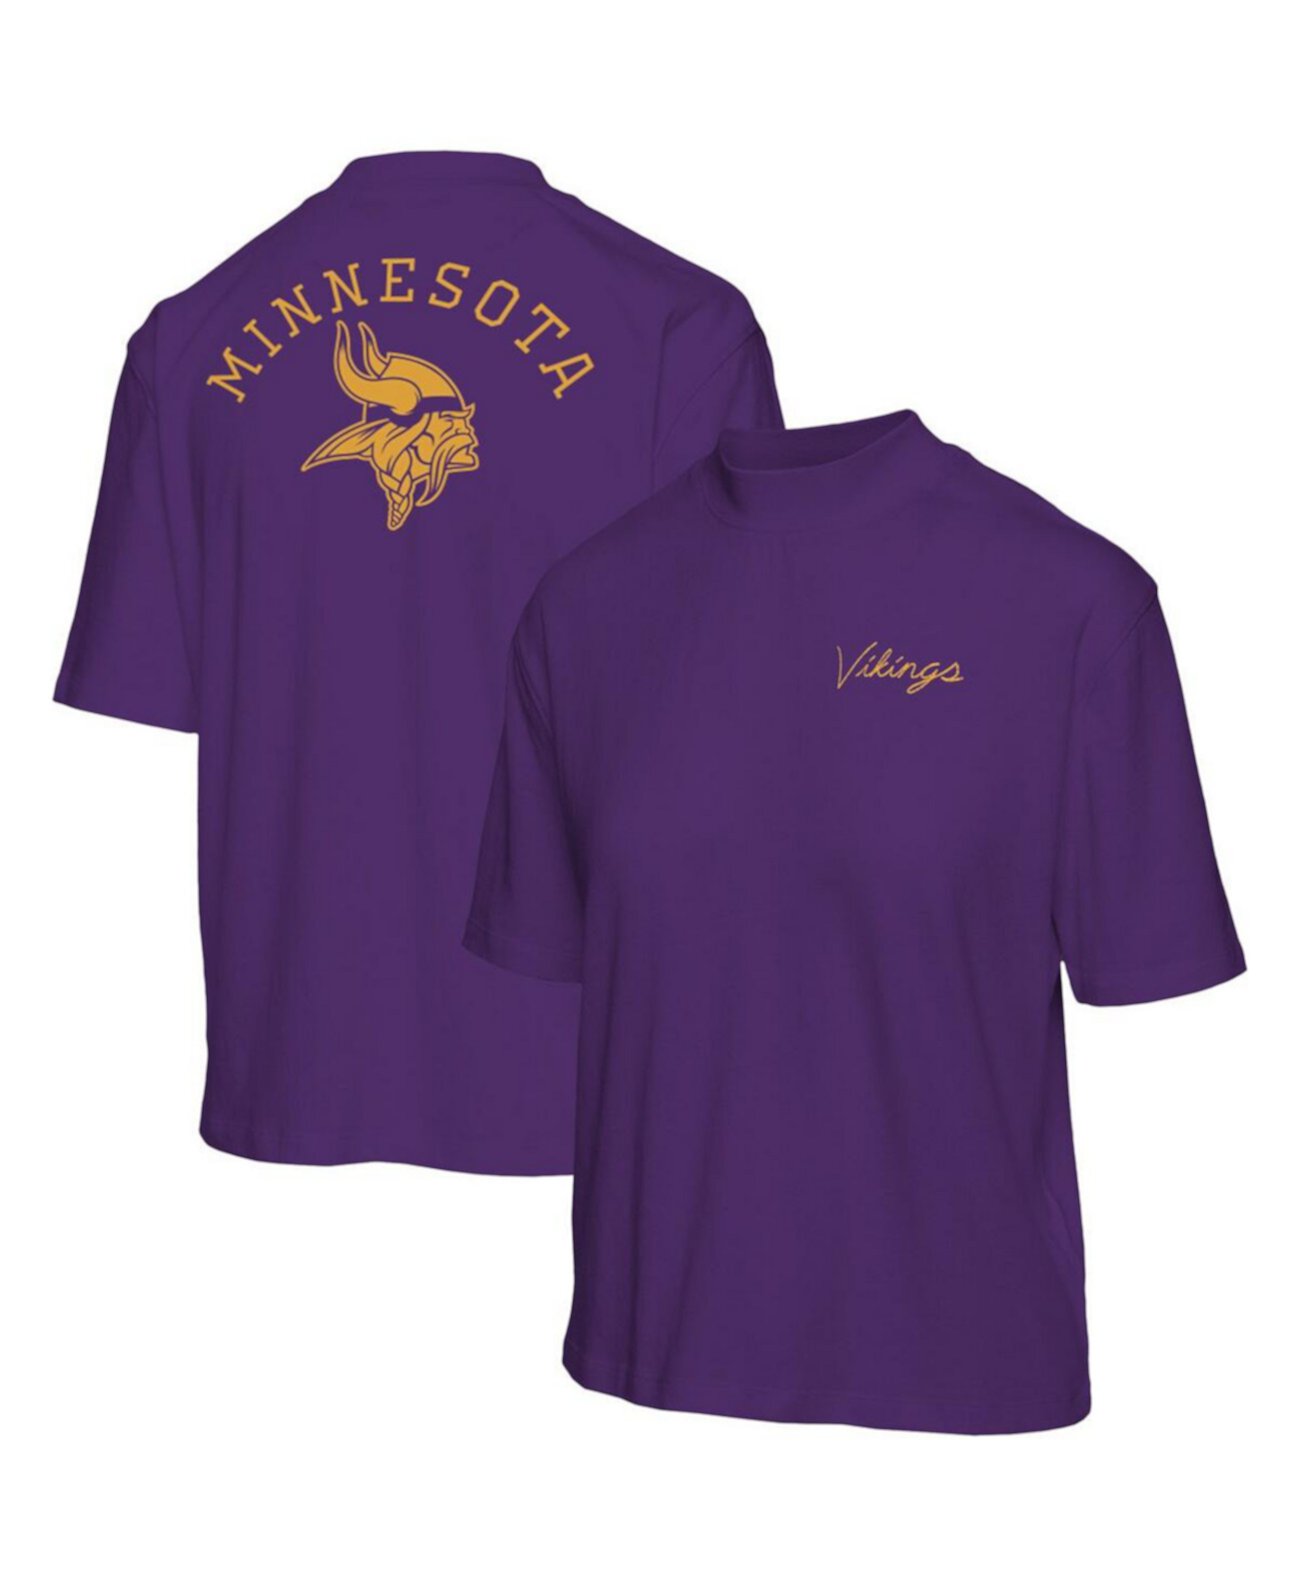 Женская фиолетовая футболка Minnesota Vikings с короткими рукавами и воротником-стойкой Junk Food